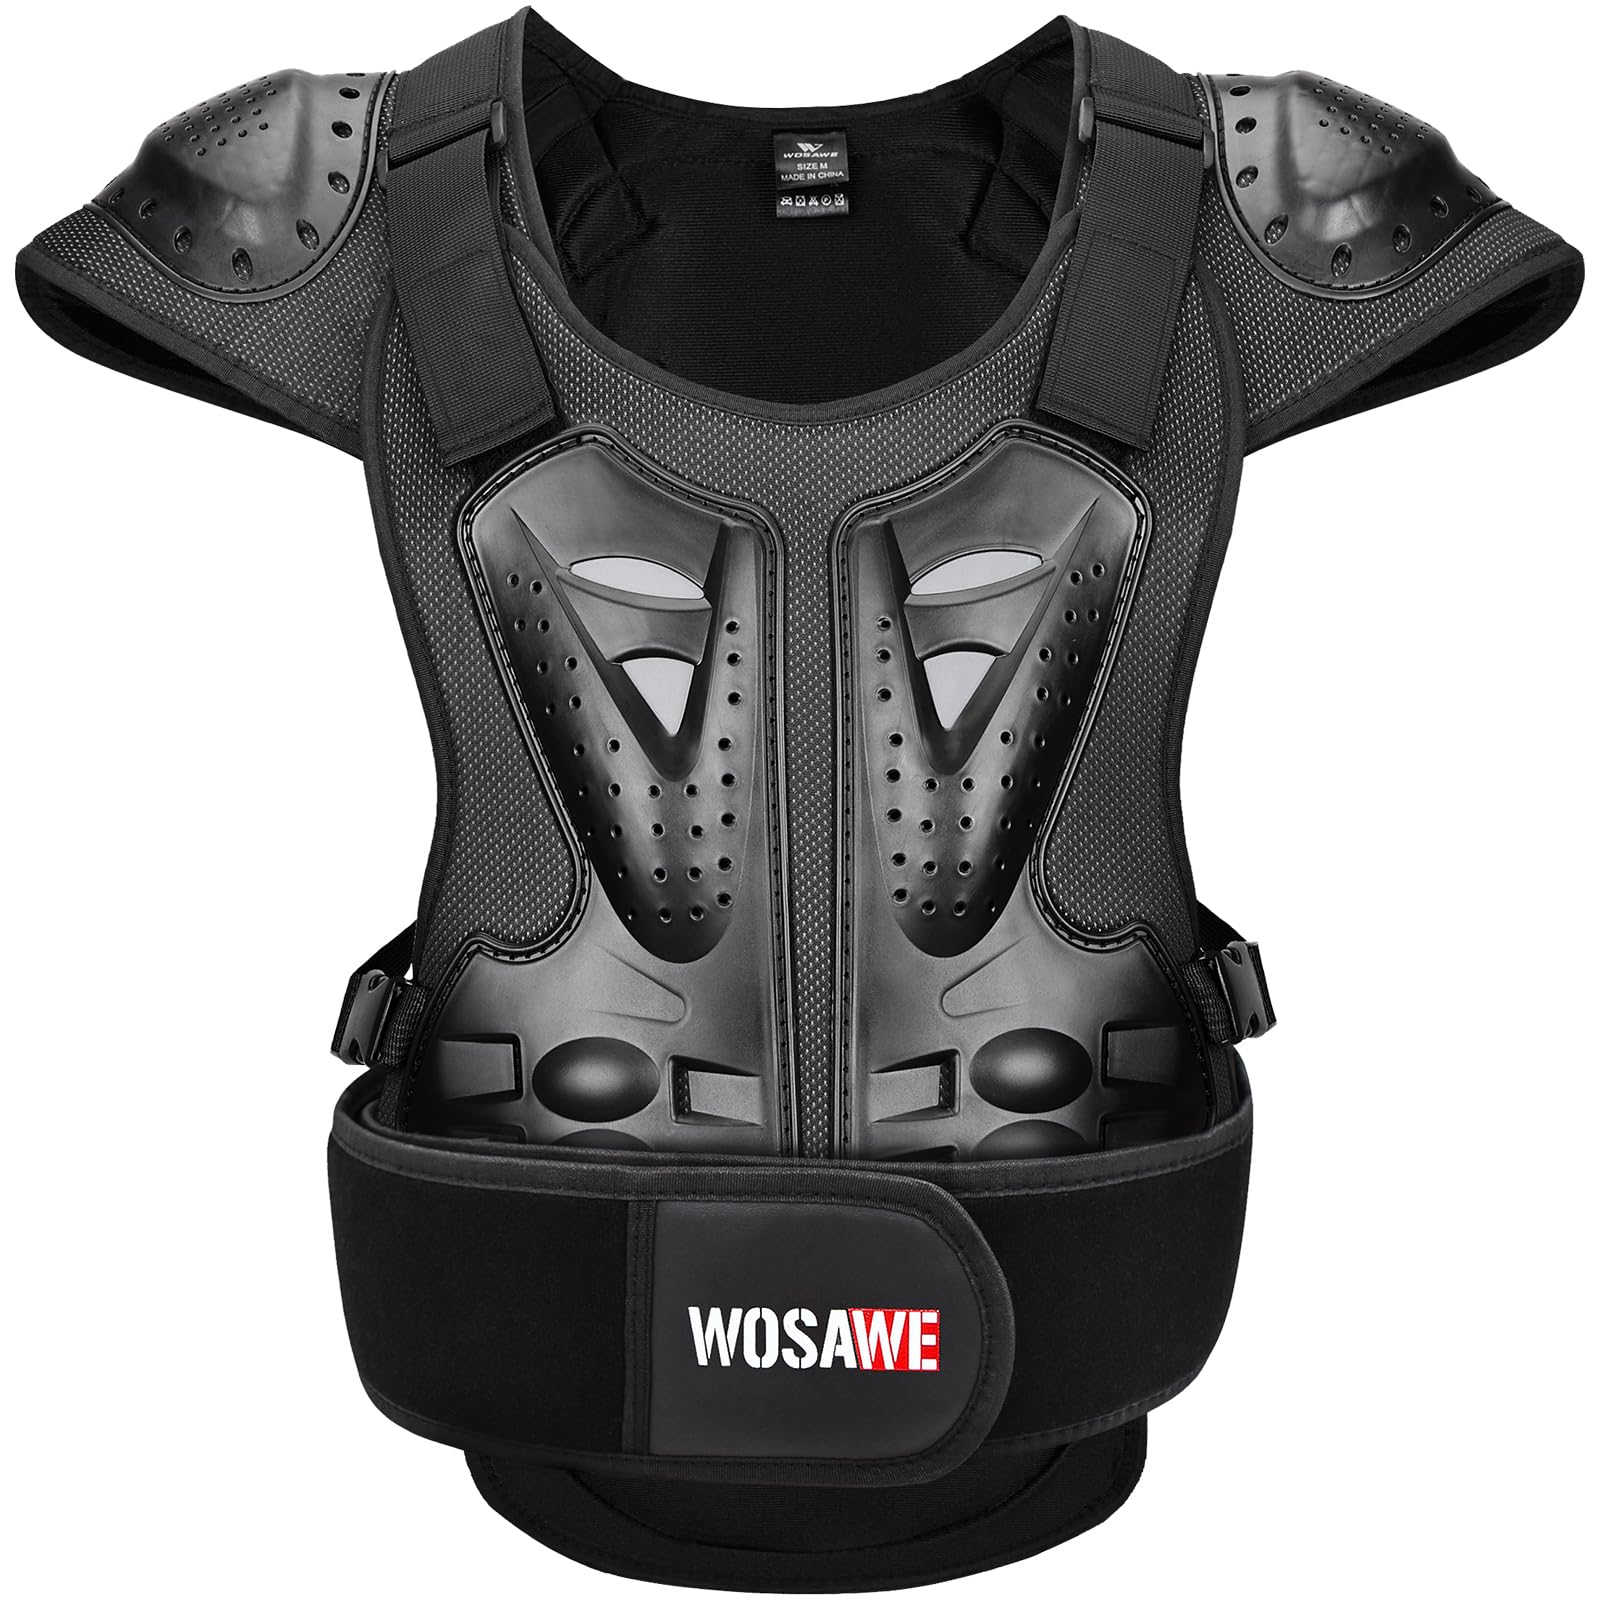 WOSAWE Motorrad Schutz Jacke für Erwachsene, Brustpanzer Racing Guard Rückenprotektoren Schutzausrüstung für Riding Skating Roller Skifahren Snowboard (15 Schwarz, L) von WOSAWE